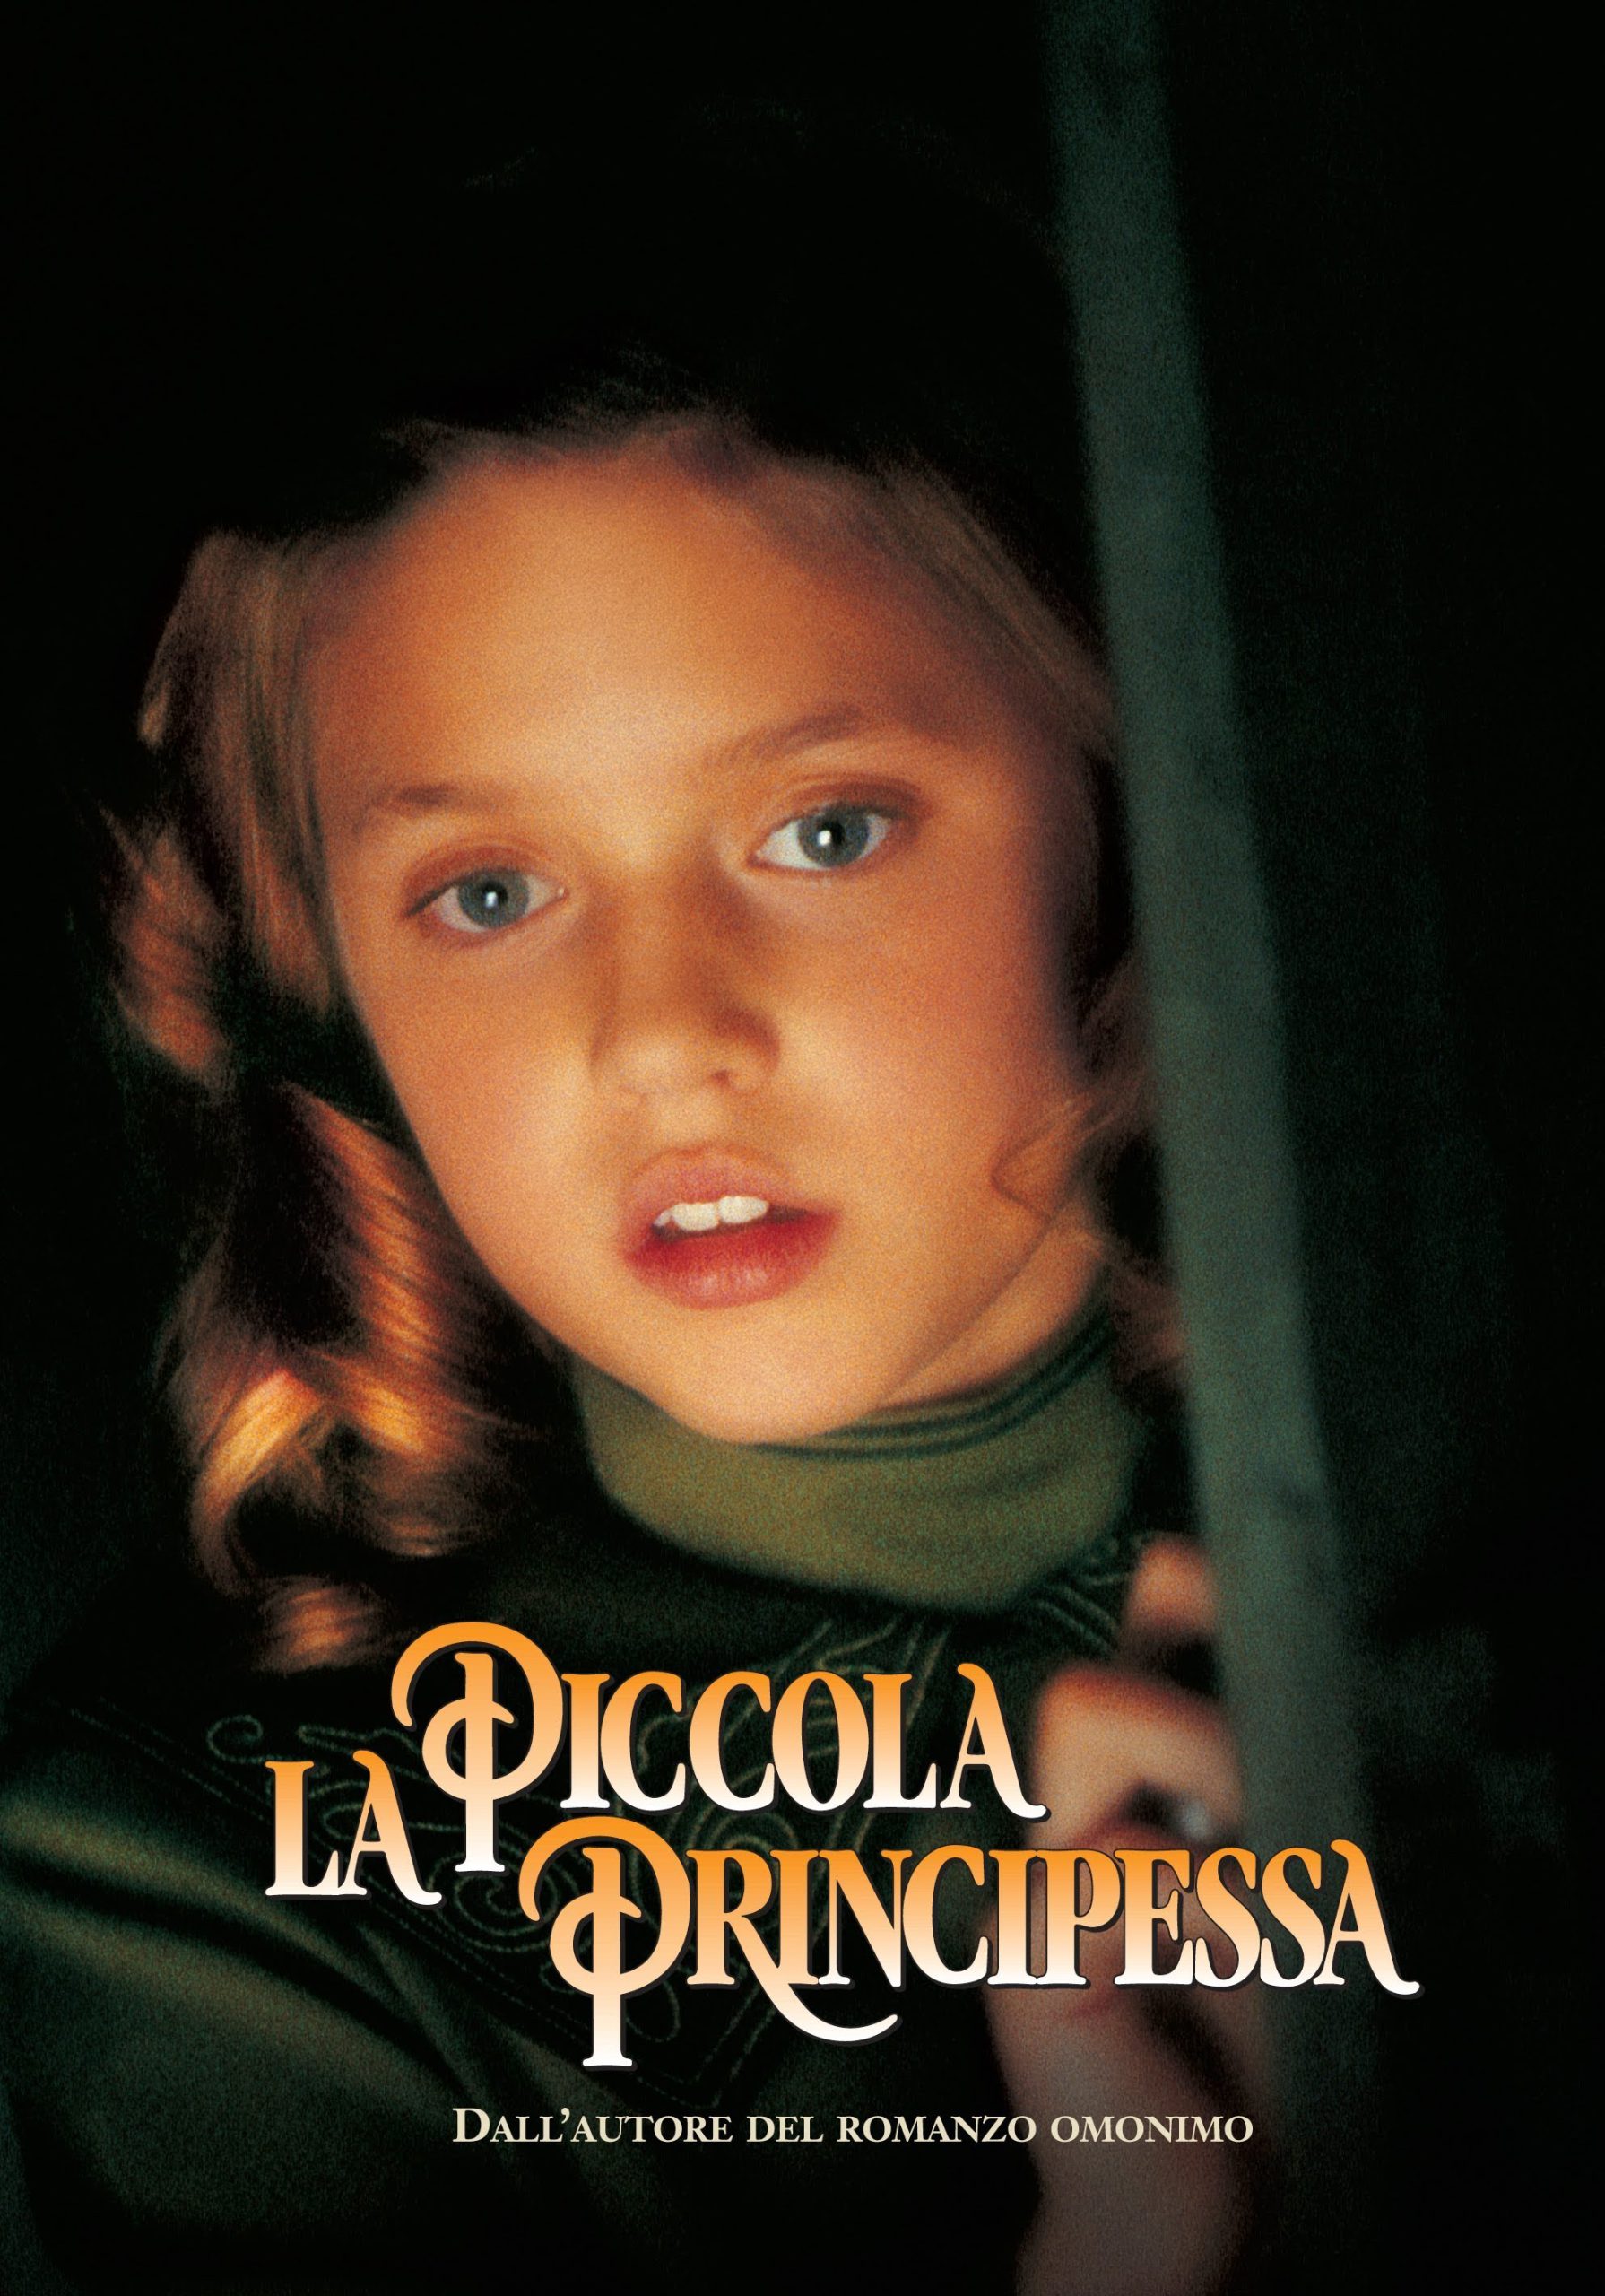 La piccola principessa [HD] (1995)